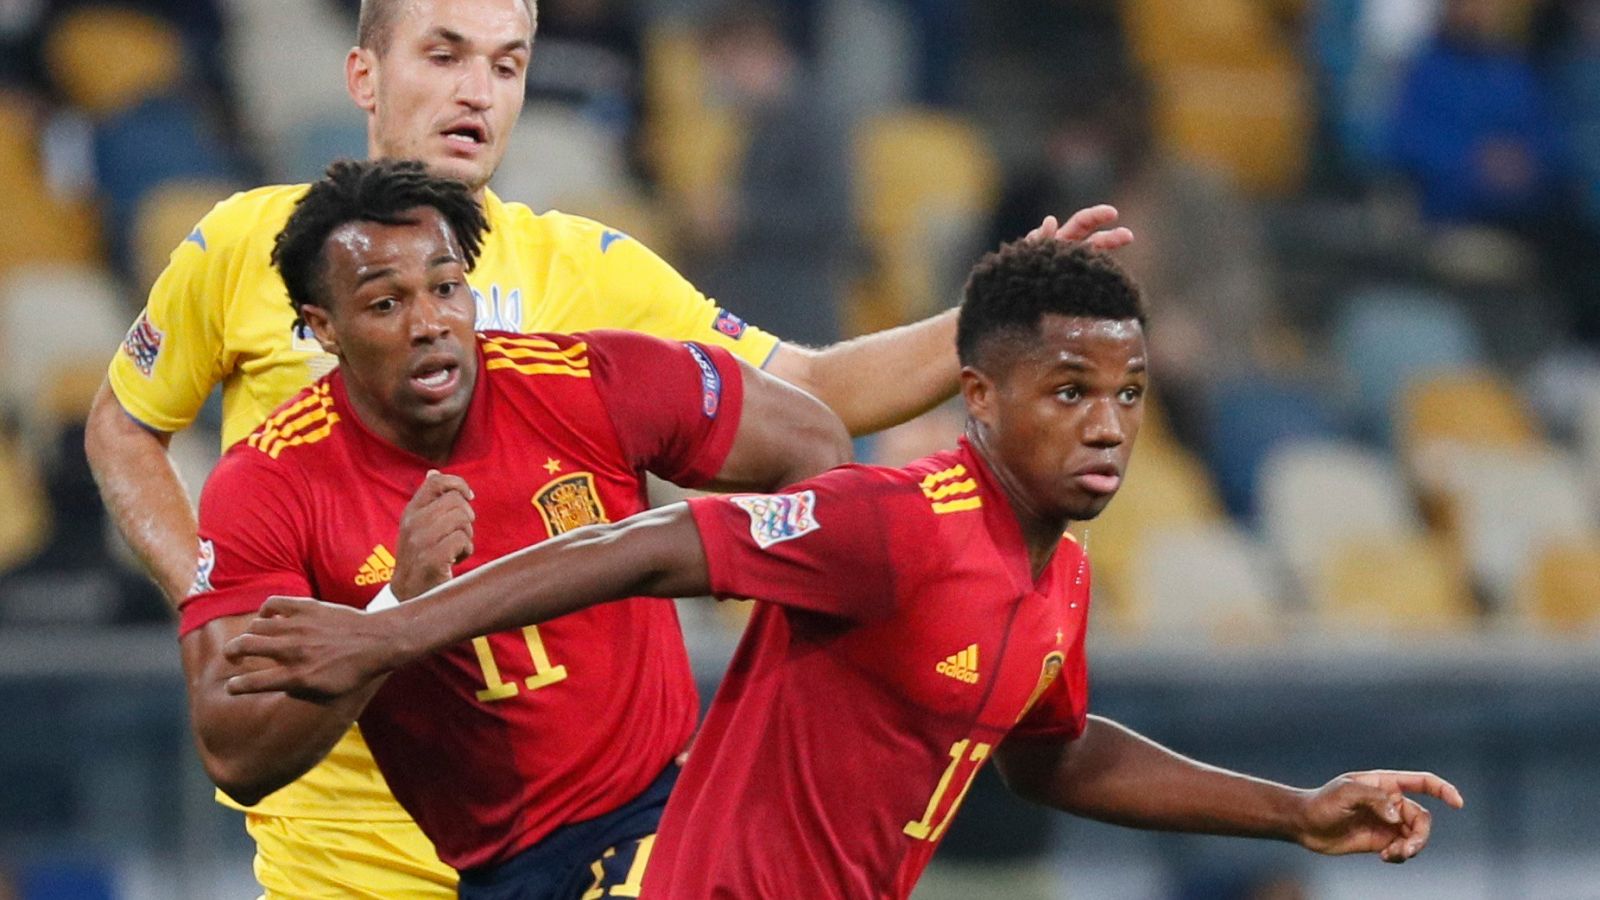 Los jugadores de la selección española Adama Traoré y Ansu Fati durante el partido ante Ucrania en Kiev.